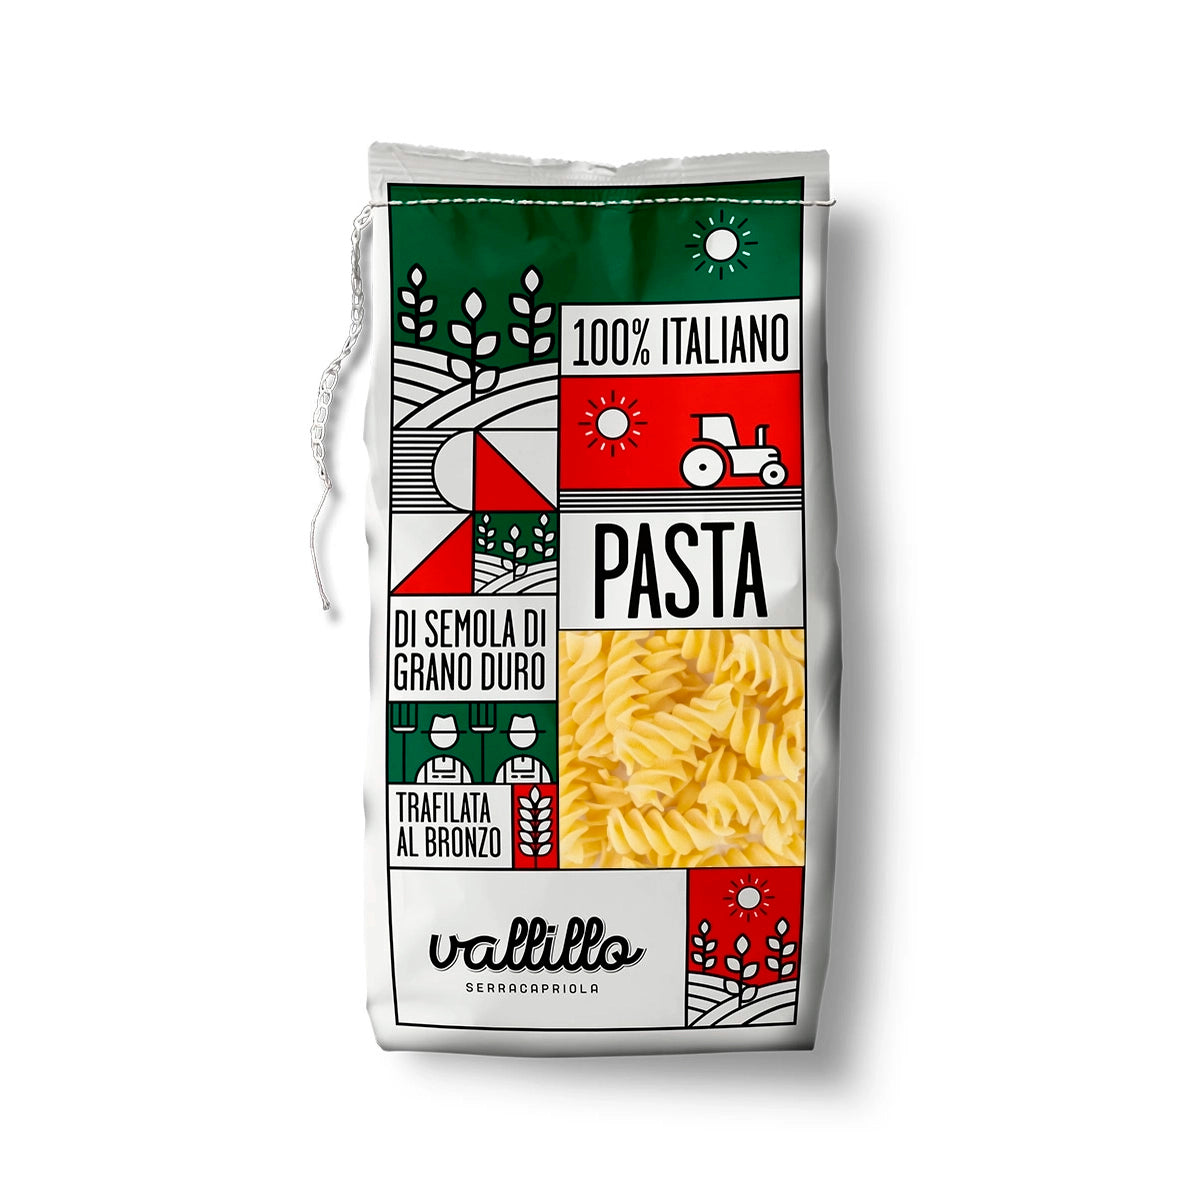 Fussilloni - 100% Italian artisanal pasta